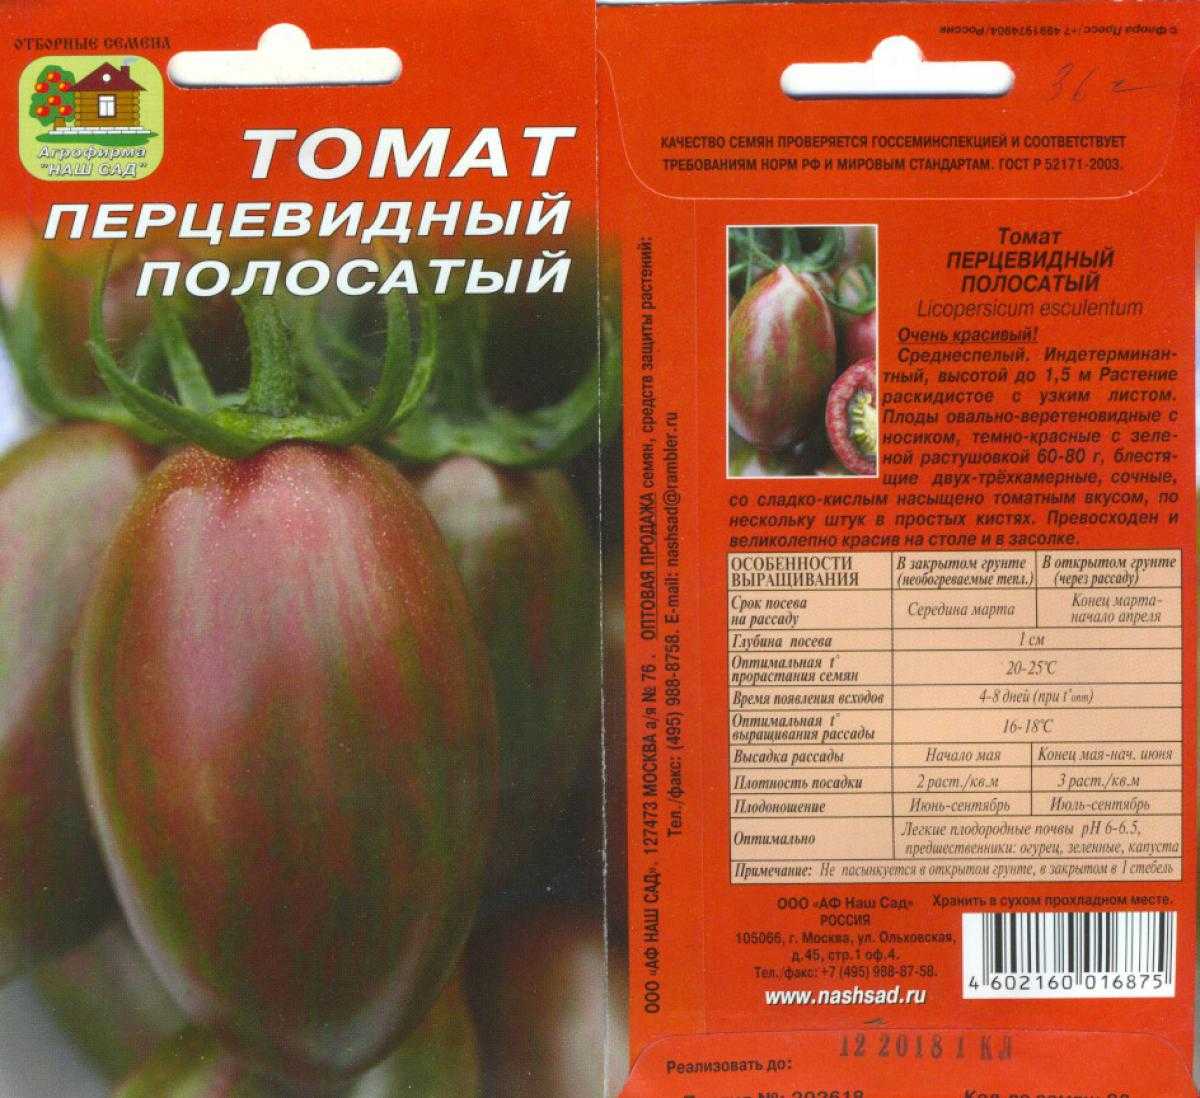 Шоколадный полосатый томат описание сорта характеристика фото